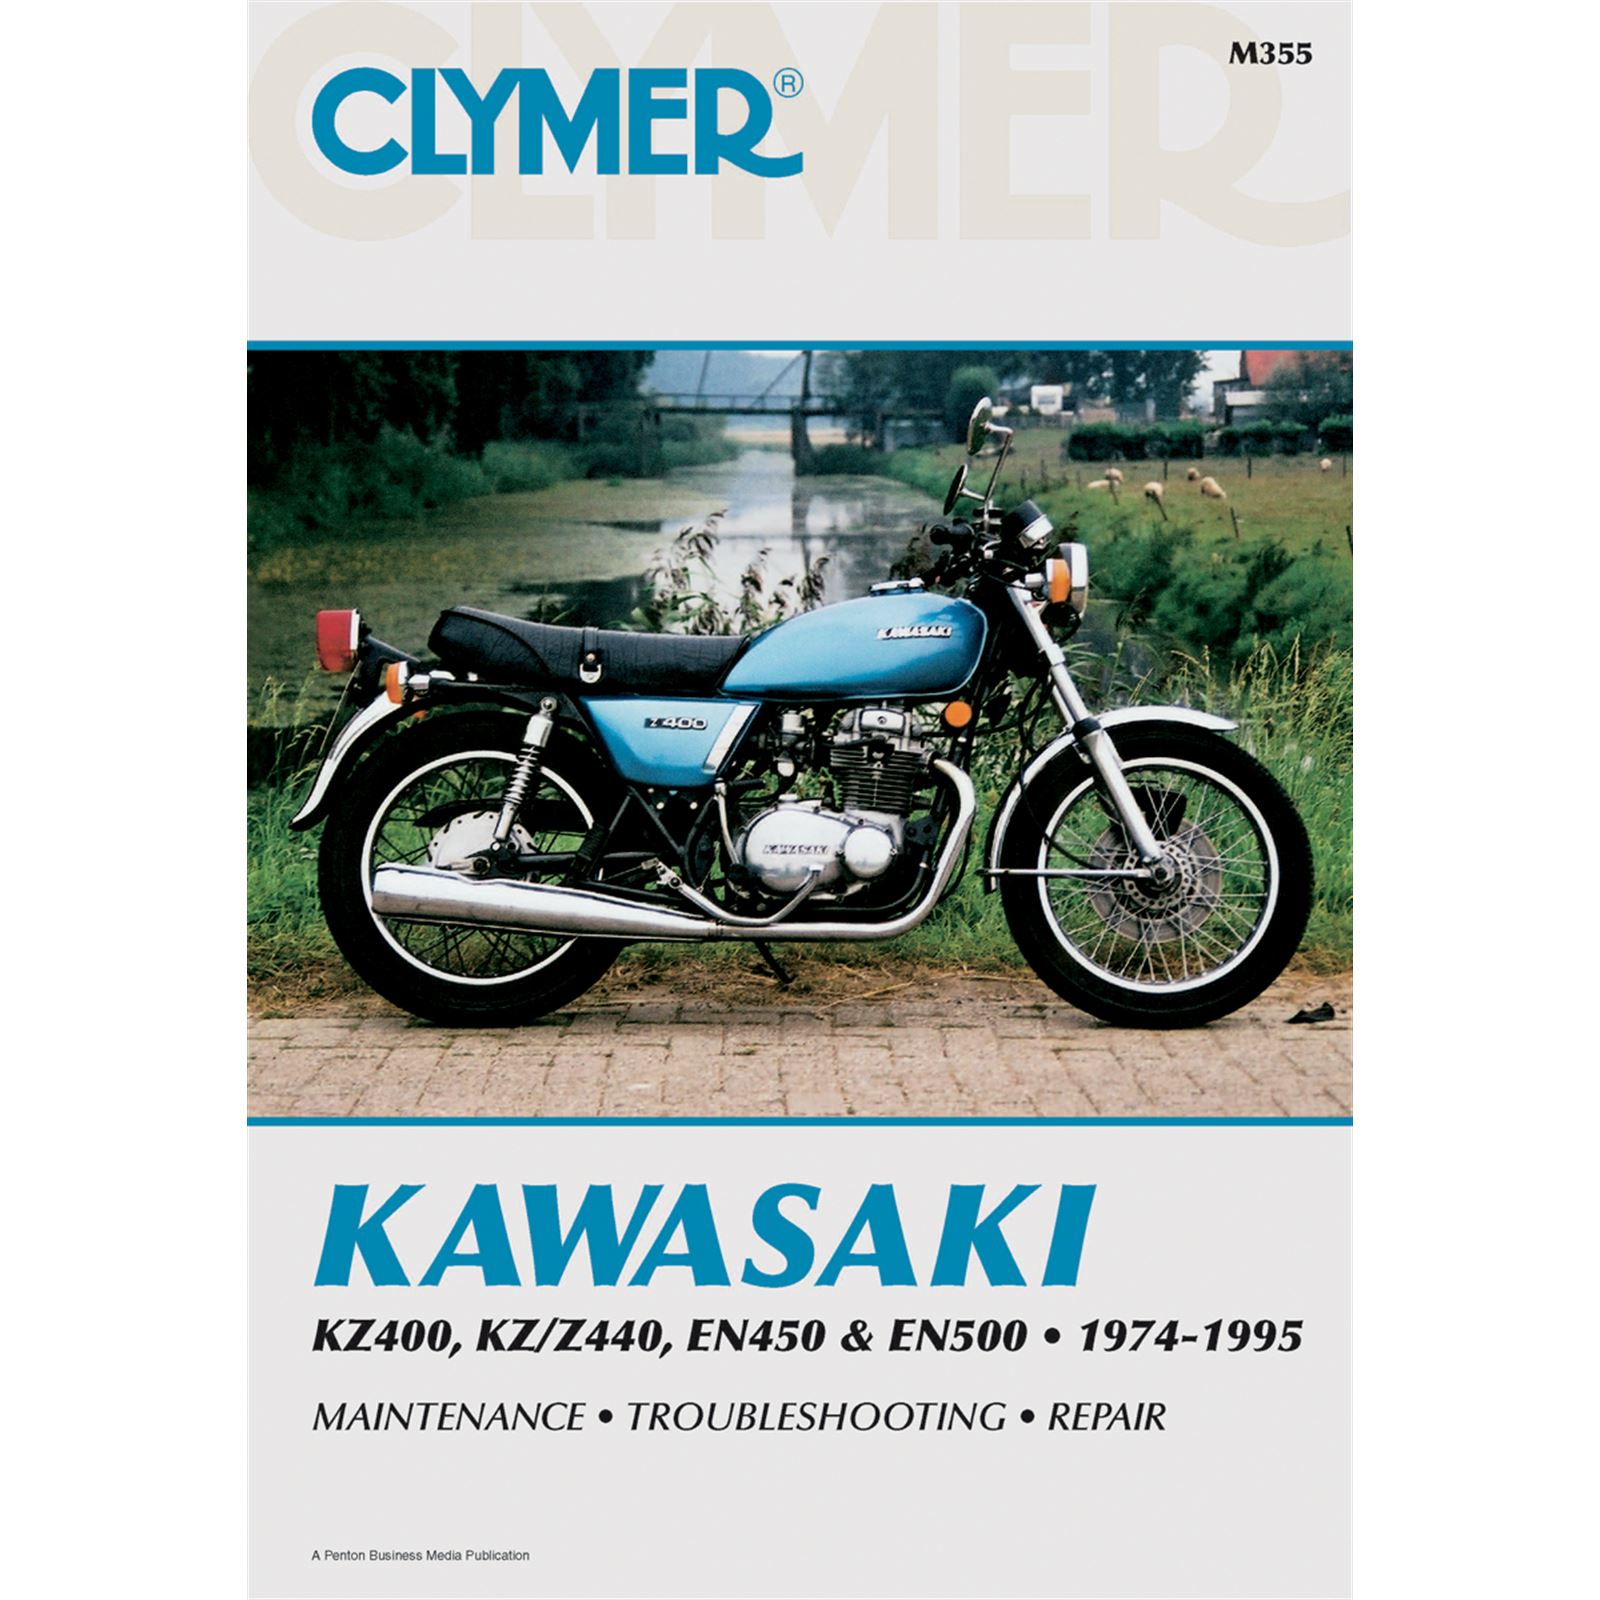 Clymer Manual for Kawasaki KZ400 to EN500